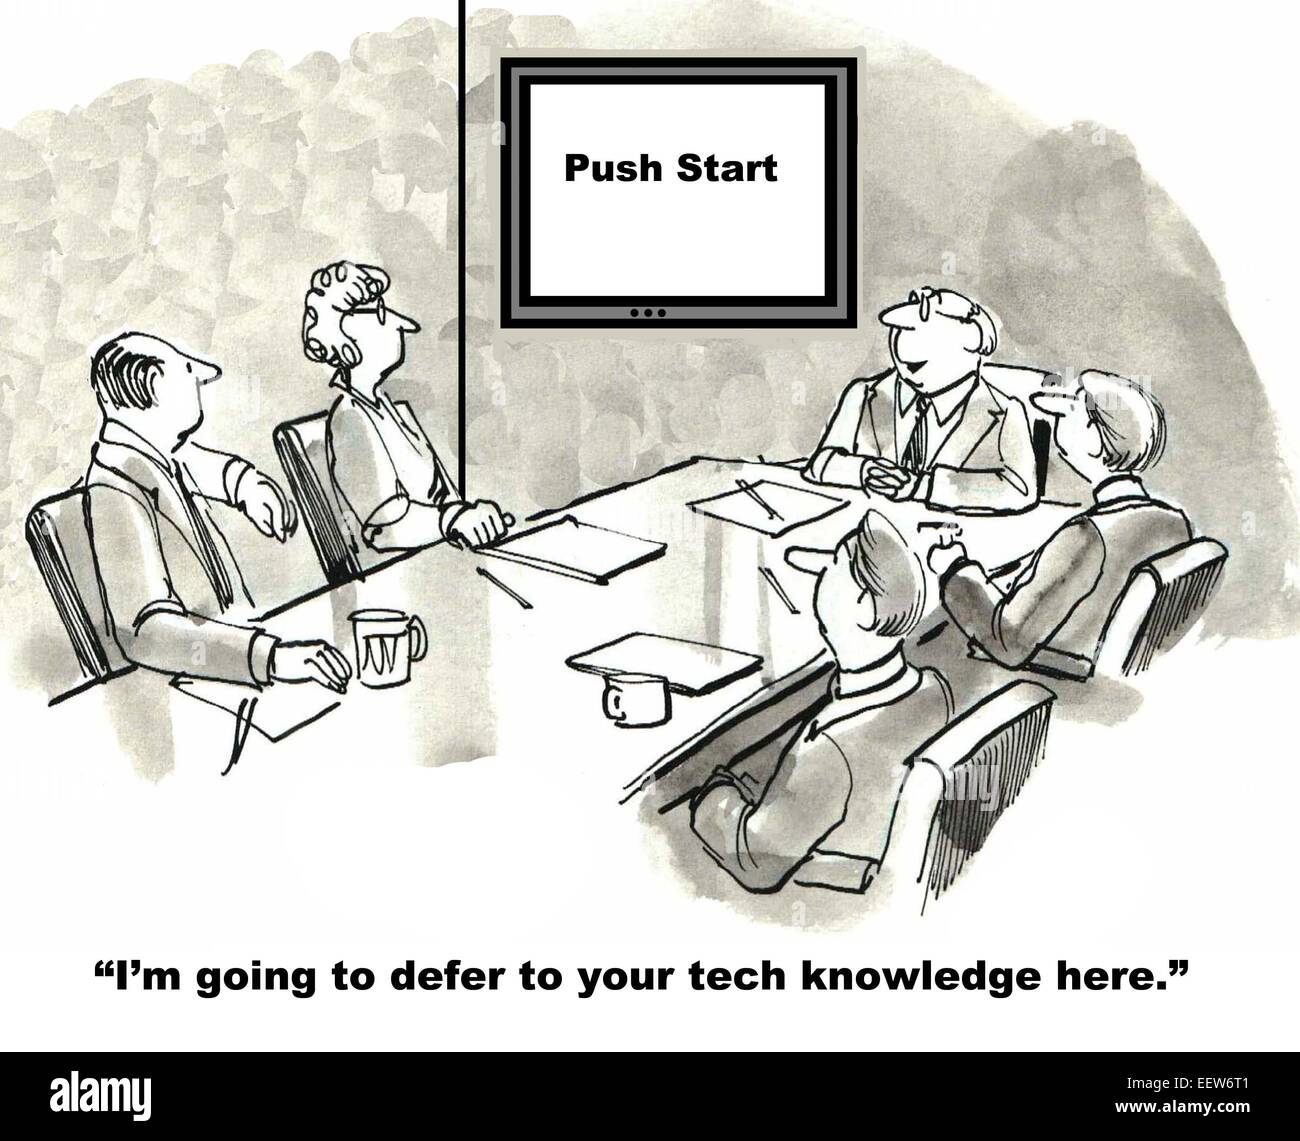 Karikatur von Geschäftsmann, ein team zu sagen er wird verschieben, um ihre technischen Kenntnisse, Schild steht, drücken Sie Start ". Stockfoto